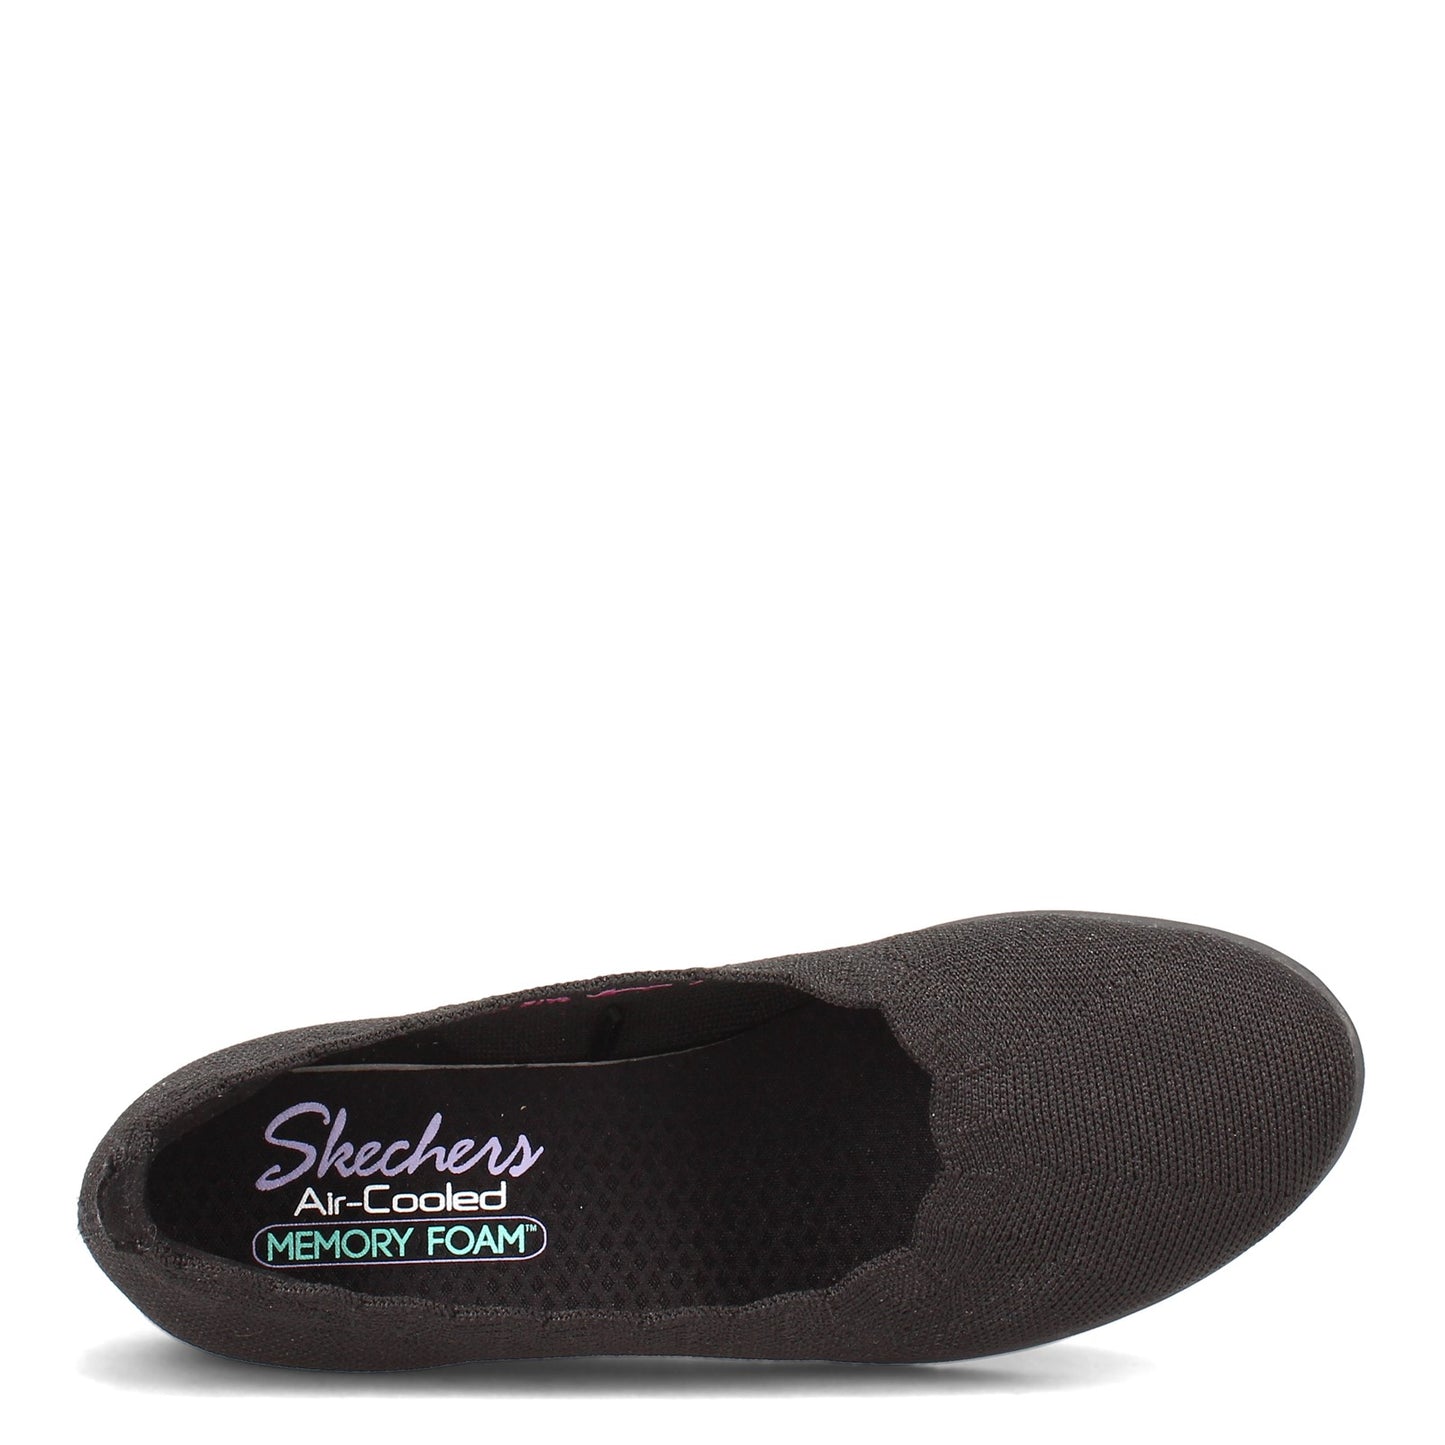 Peltz Shoes  Women's Skechers Cleo Flex Wedge - Spellbind Slip-On - Wide Width BLACK 158156W-BBK